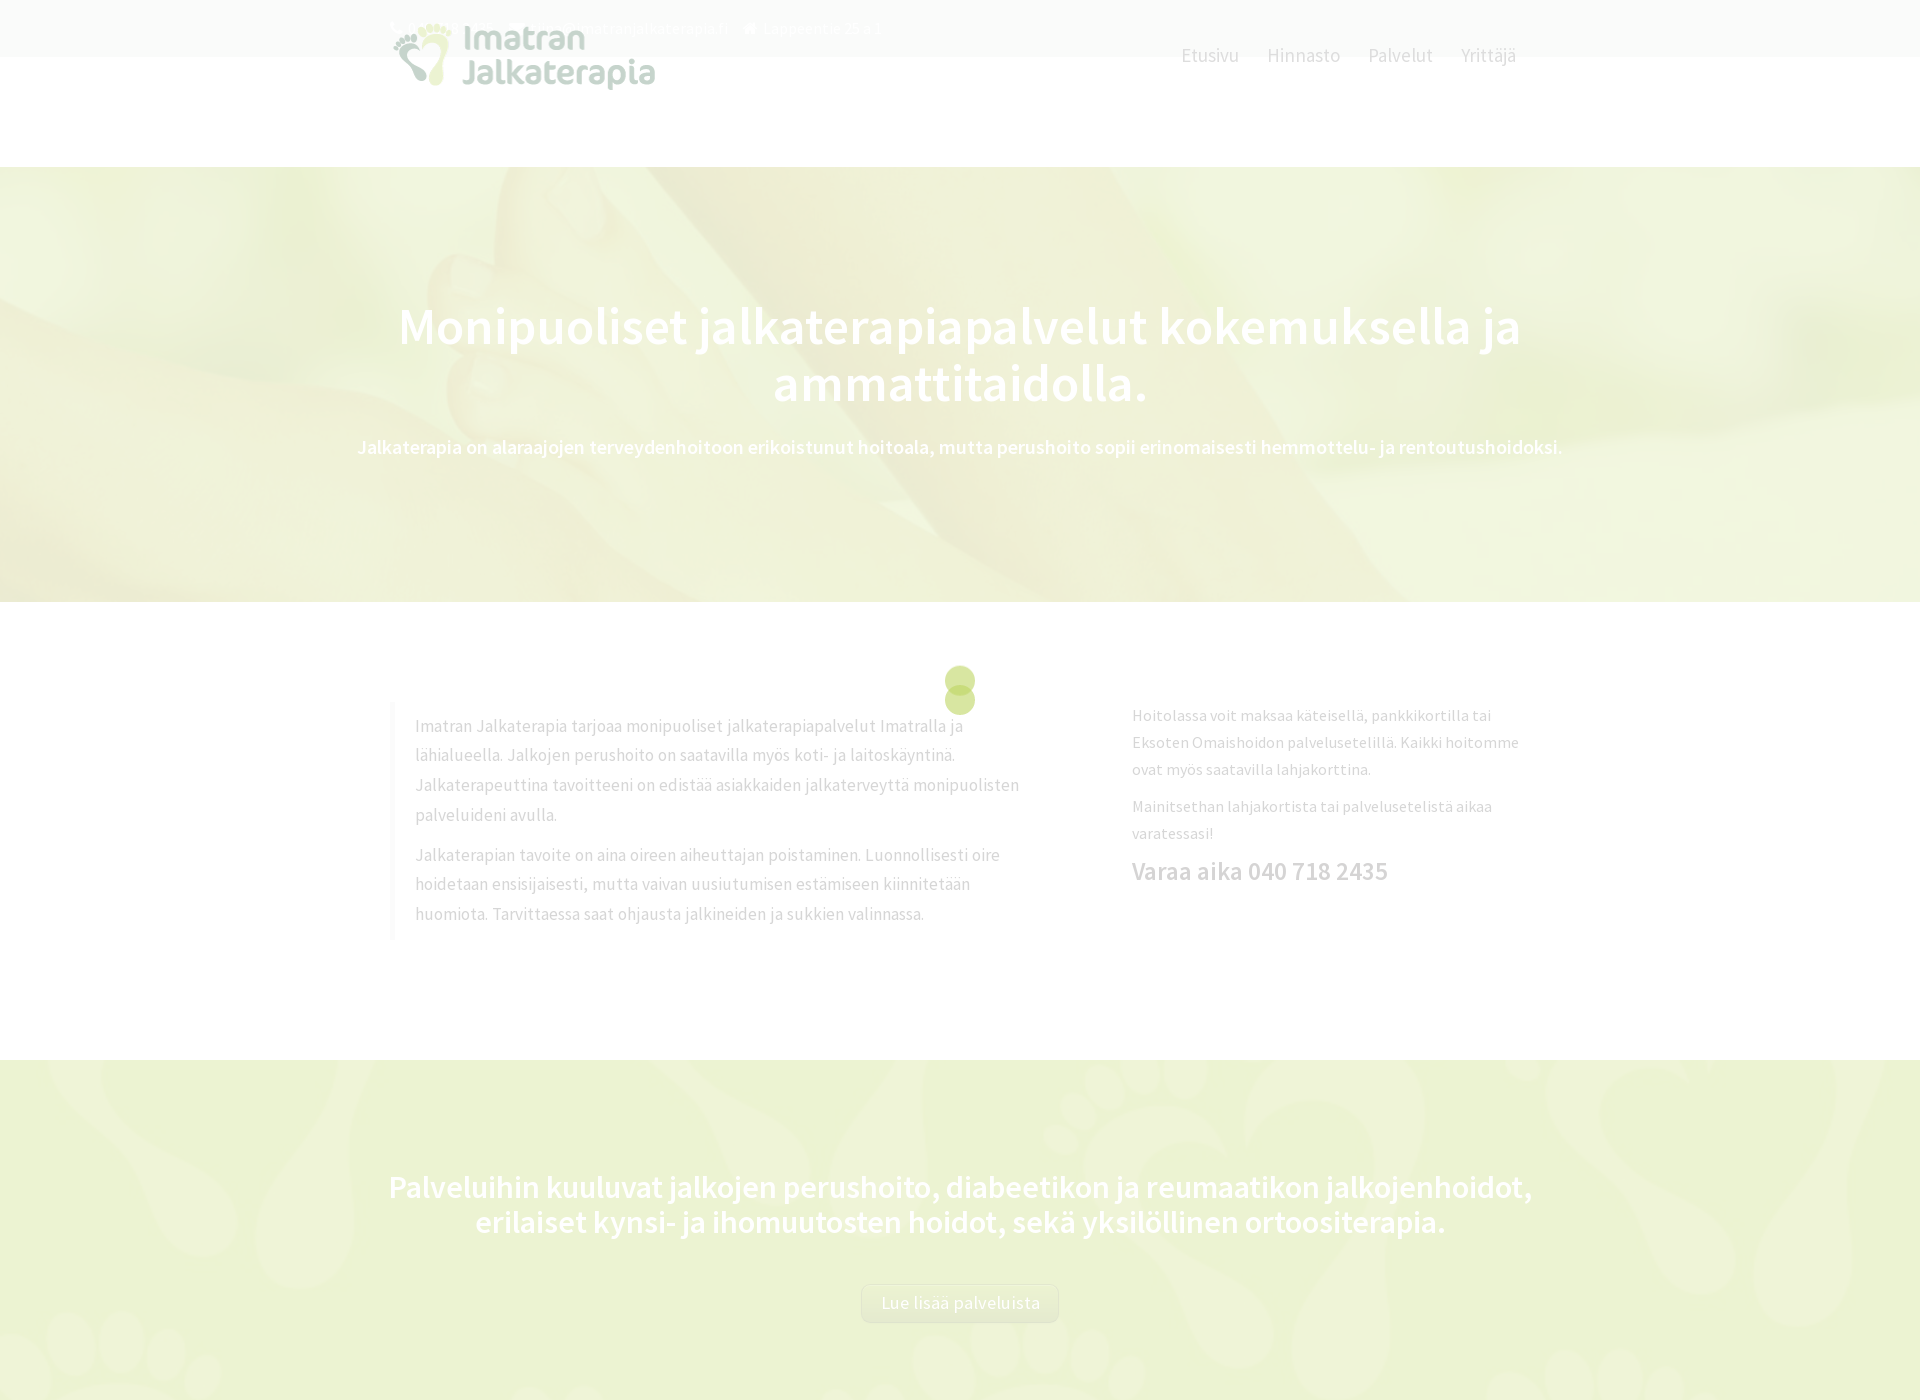 Skärmdump för imatranjalkaterapia.fi